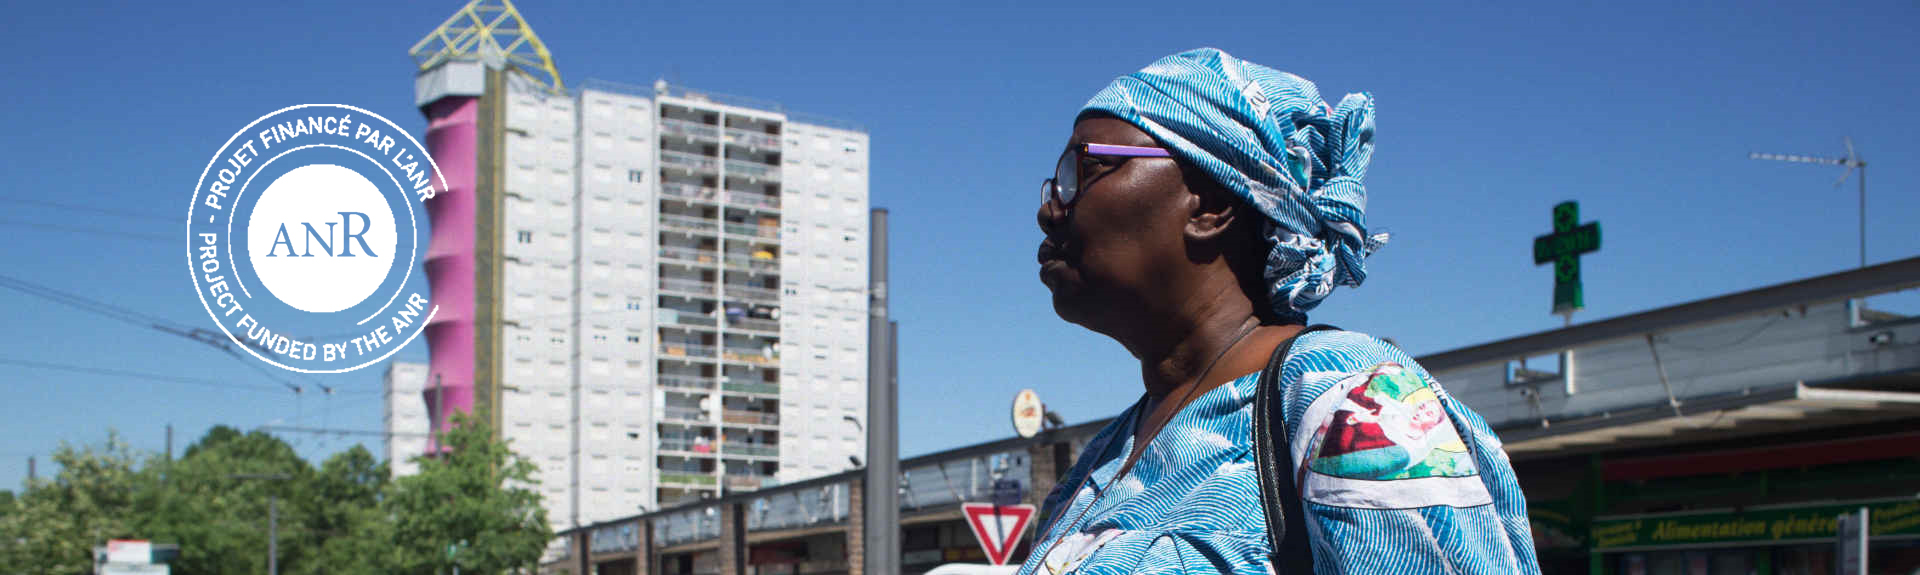 Header de ReliMig - Femme à un carrefour de ville en Afrique + logo ANR incrusté